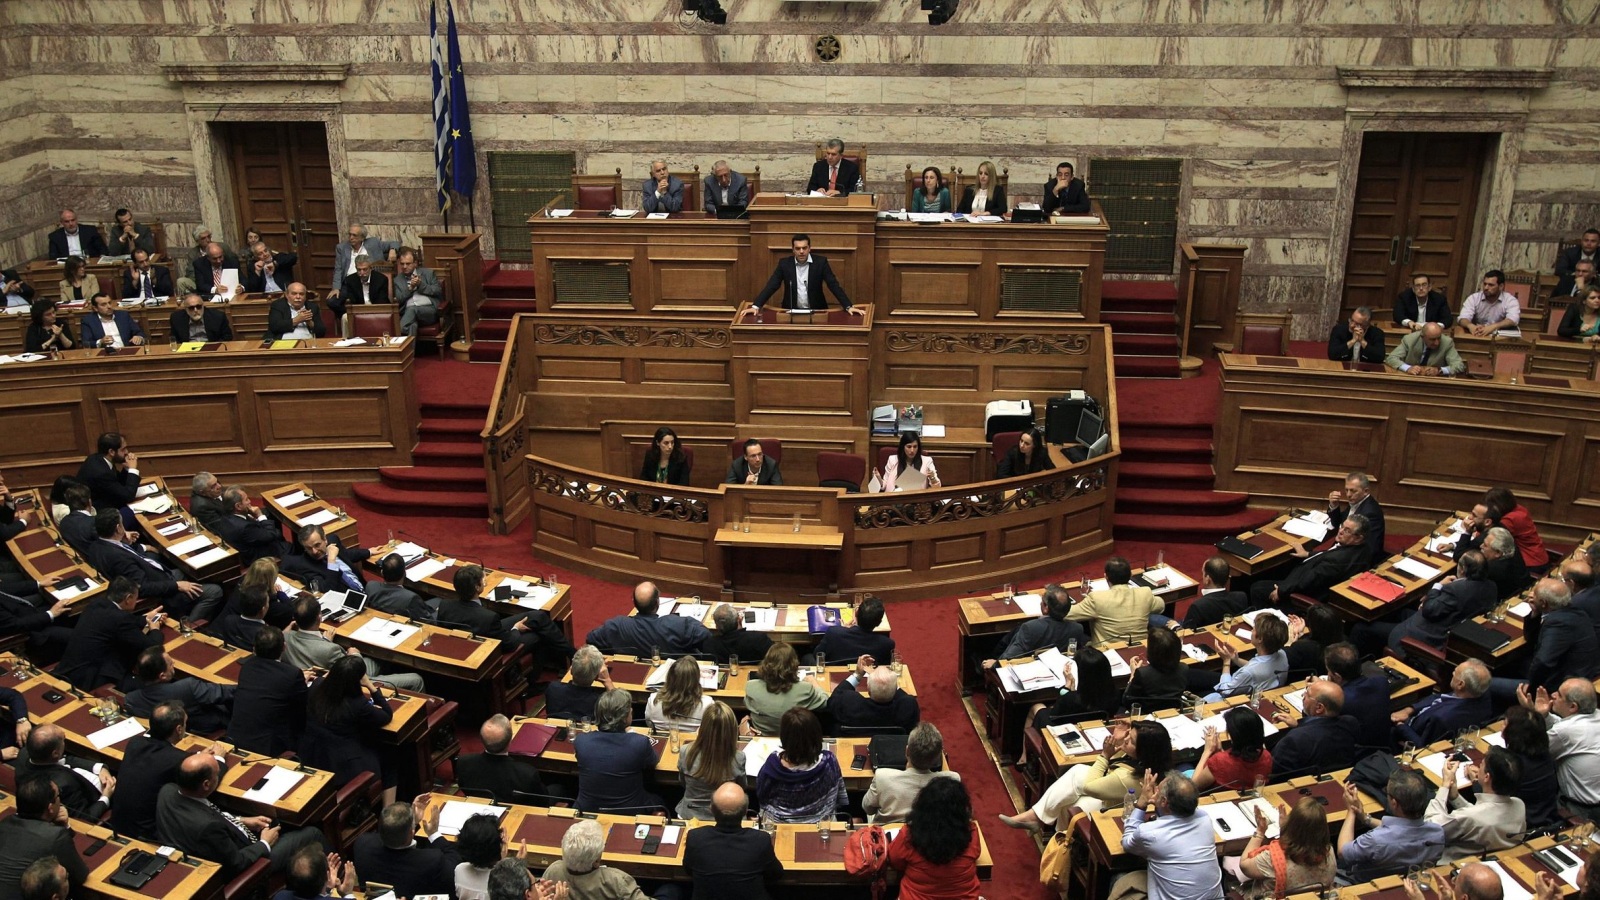 ‪‬ البرلمان اليوناني كان قد تبنى قرارا لطرح شروط خطة الإنقاذ المالي على الاستفتاء الشعبي(الأوروبية)